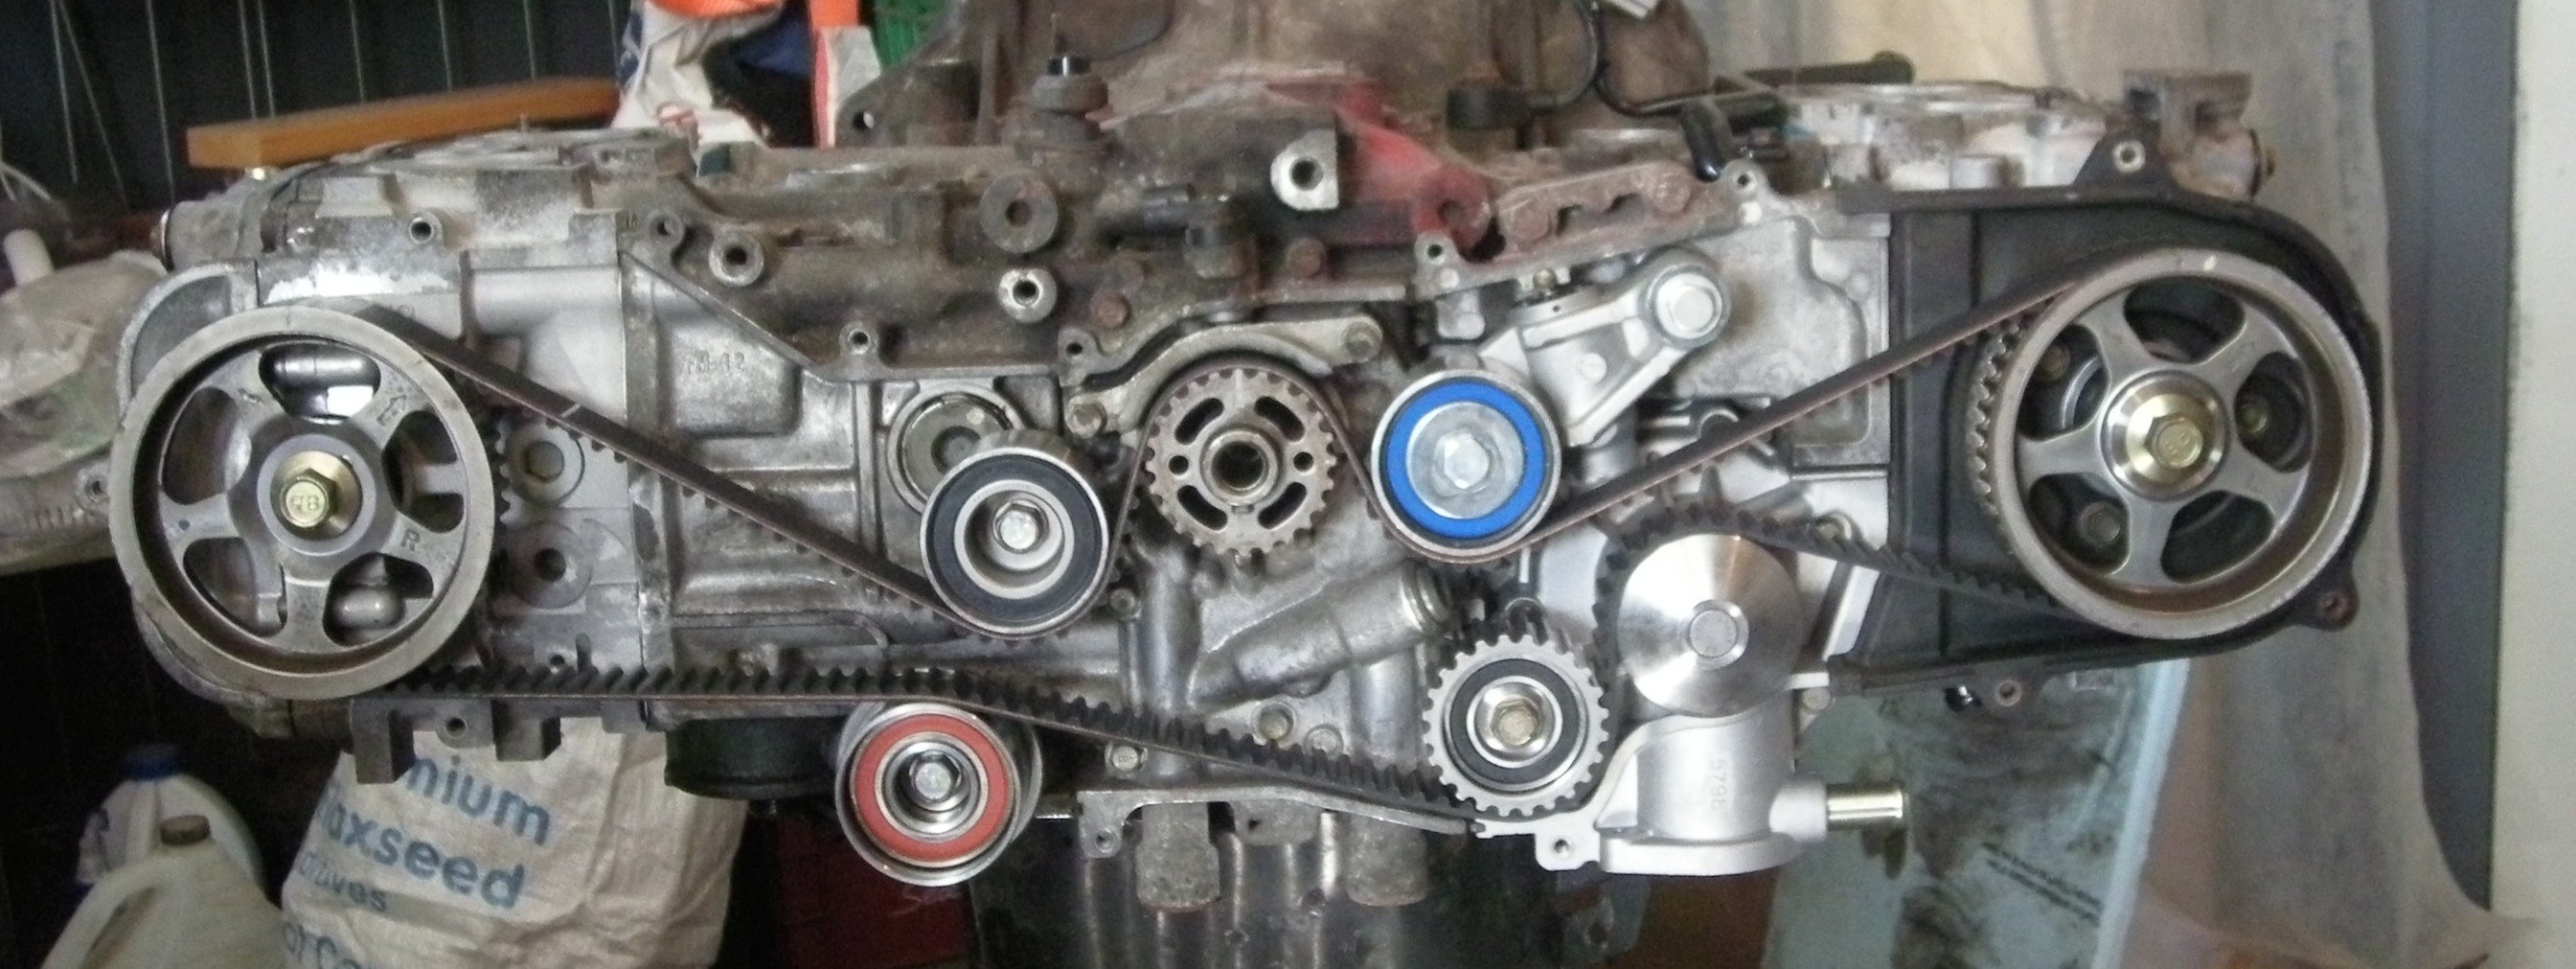 Subaru Ej25 Engine Diagram | My Wiring DIagram